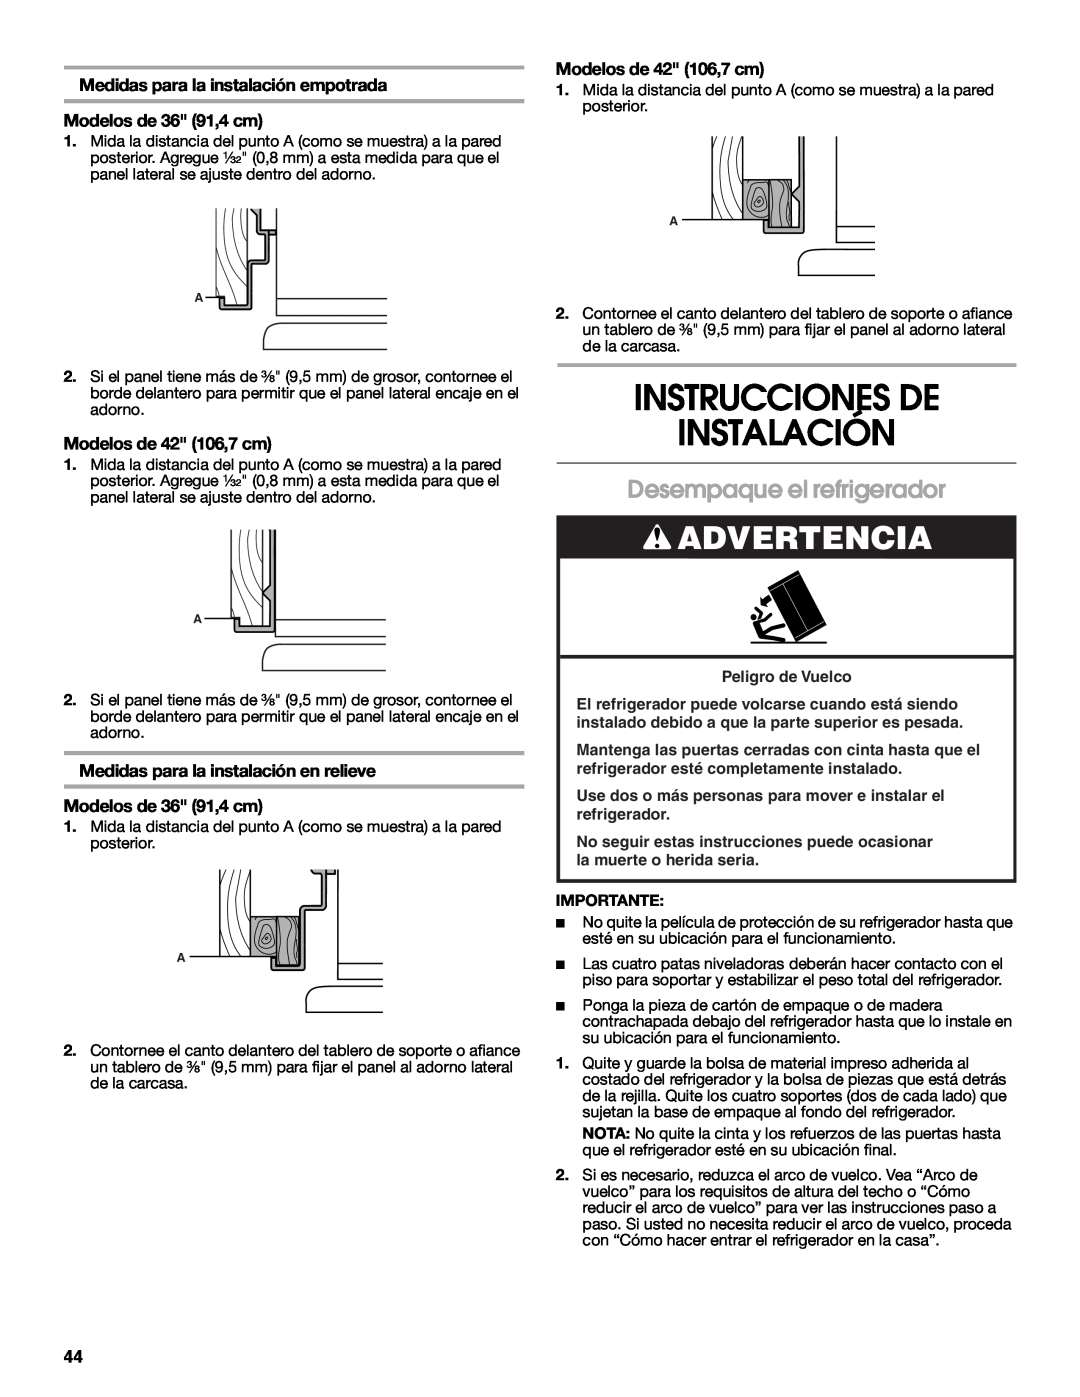 Jenn-Air W10183782A manual Instrucciones De Instalación, Desempaque el refrigerador, Advertencia, Modelos de 42 106,7 cm 